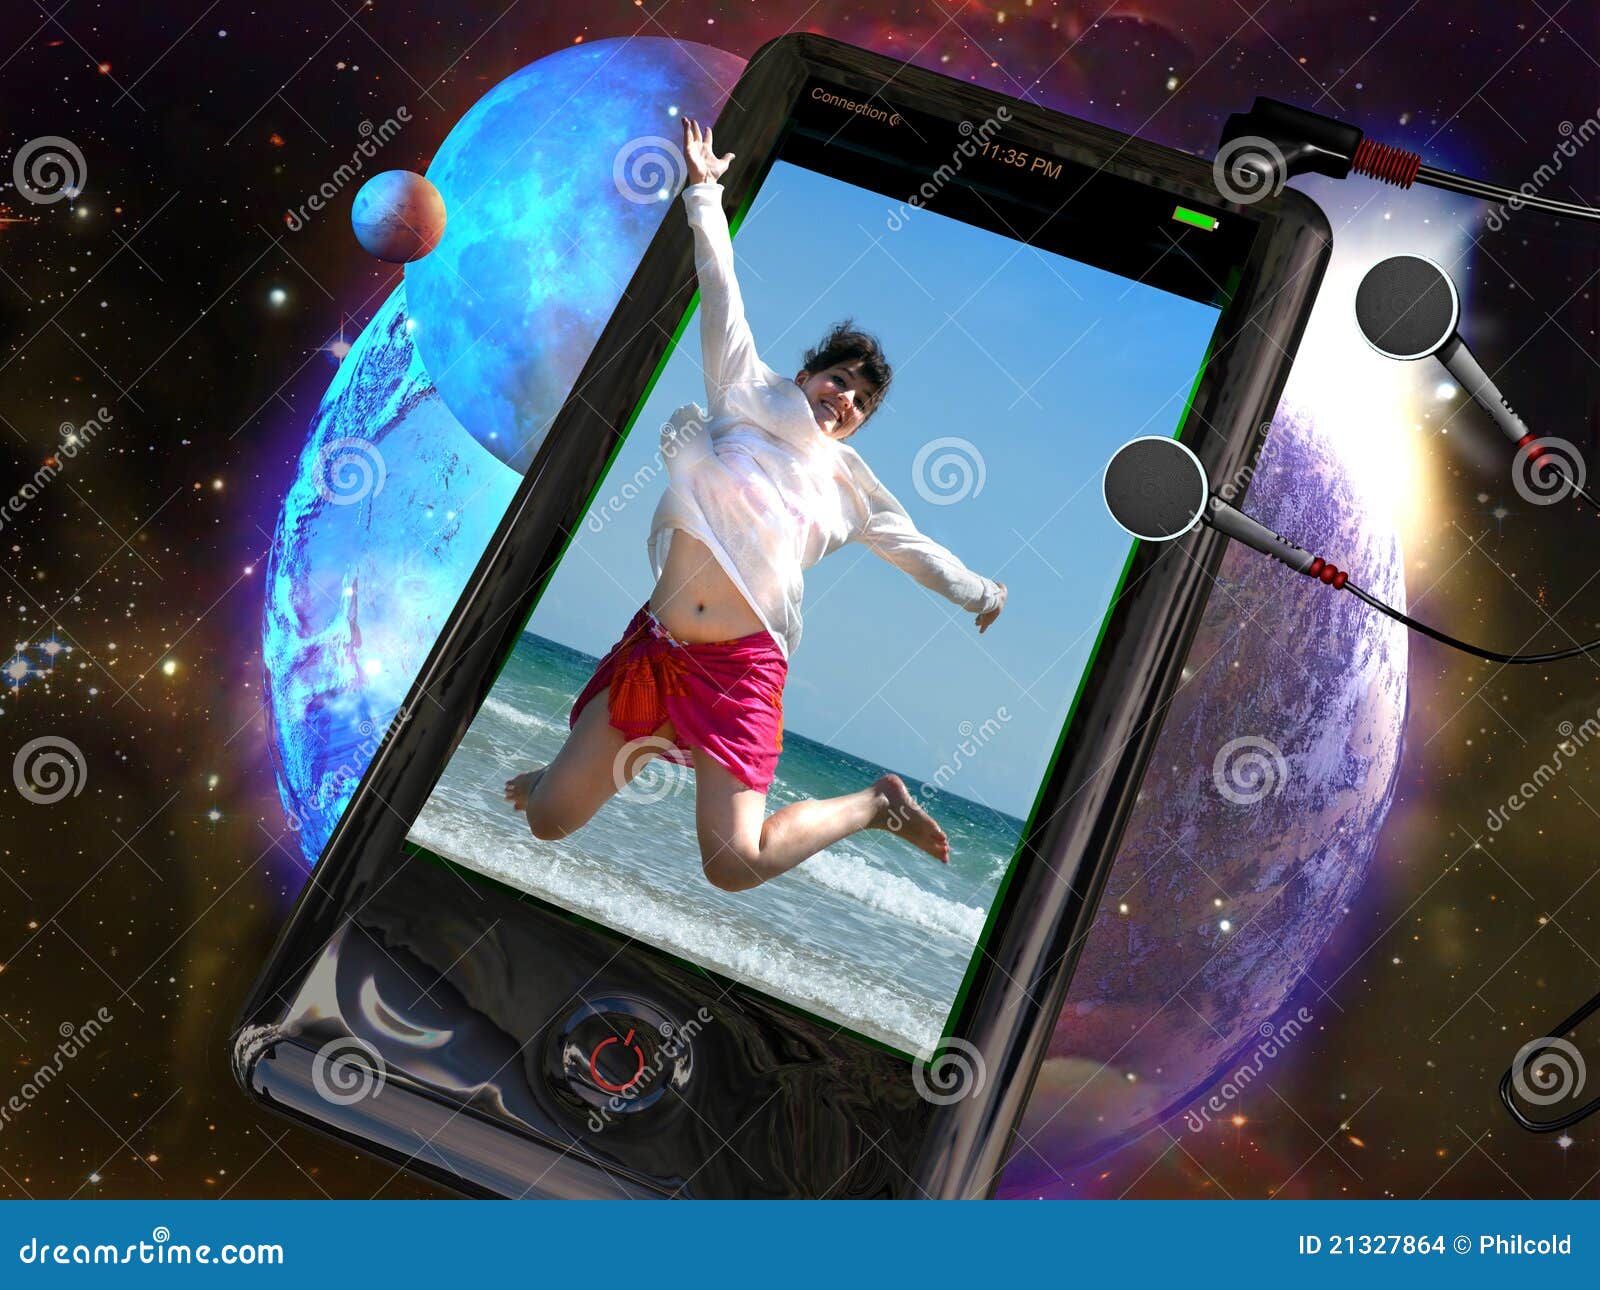 Teléfono 3D. Un teléfono, conectado con los auriculares, con una imagen 3D de una mujer joven que salta, en un fondo del espacio.